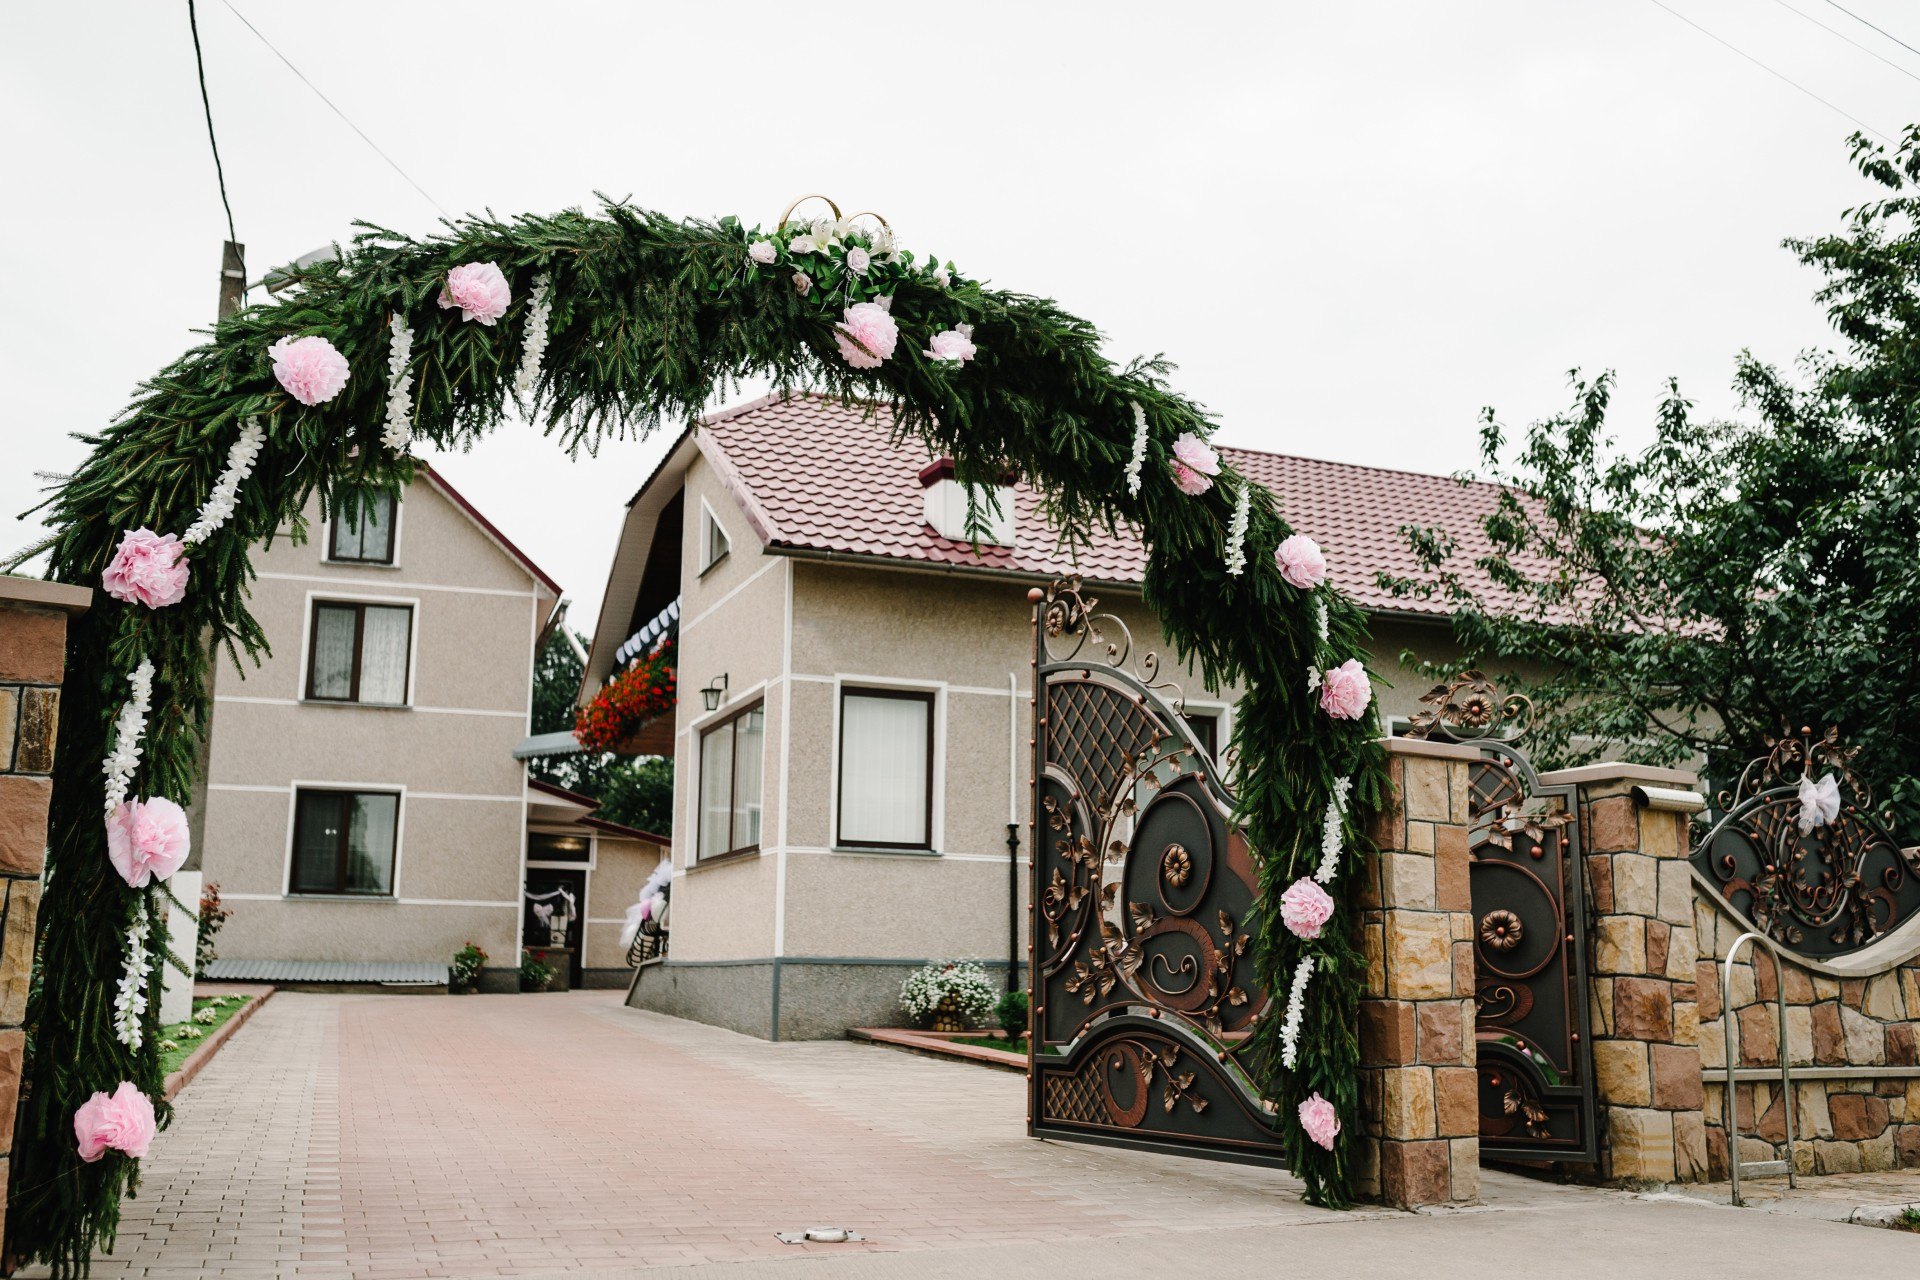 Brama weselna przed domem Panny Młodej